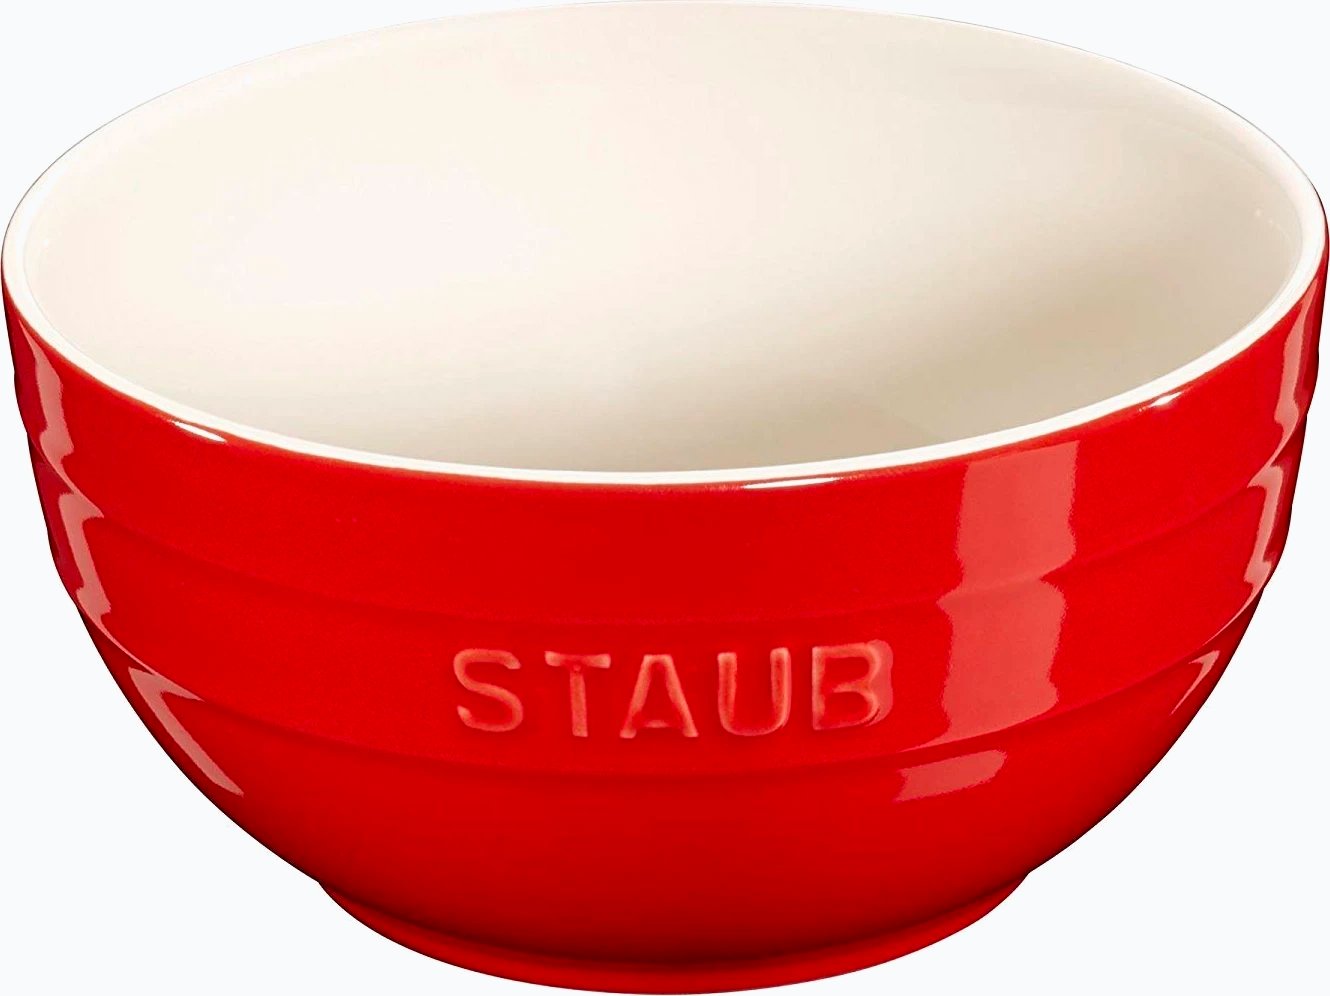 Staub oval mini casserole dish 0.2 l from STAUB 